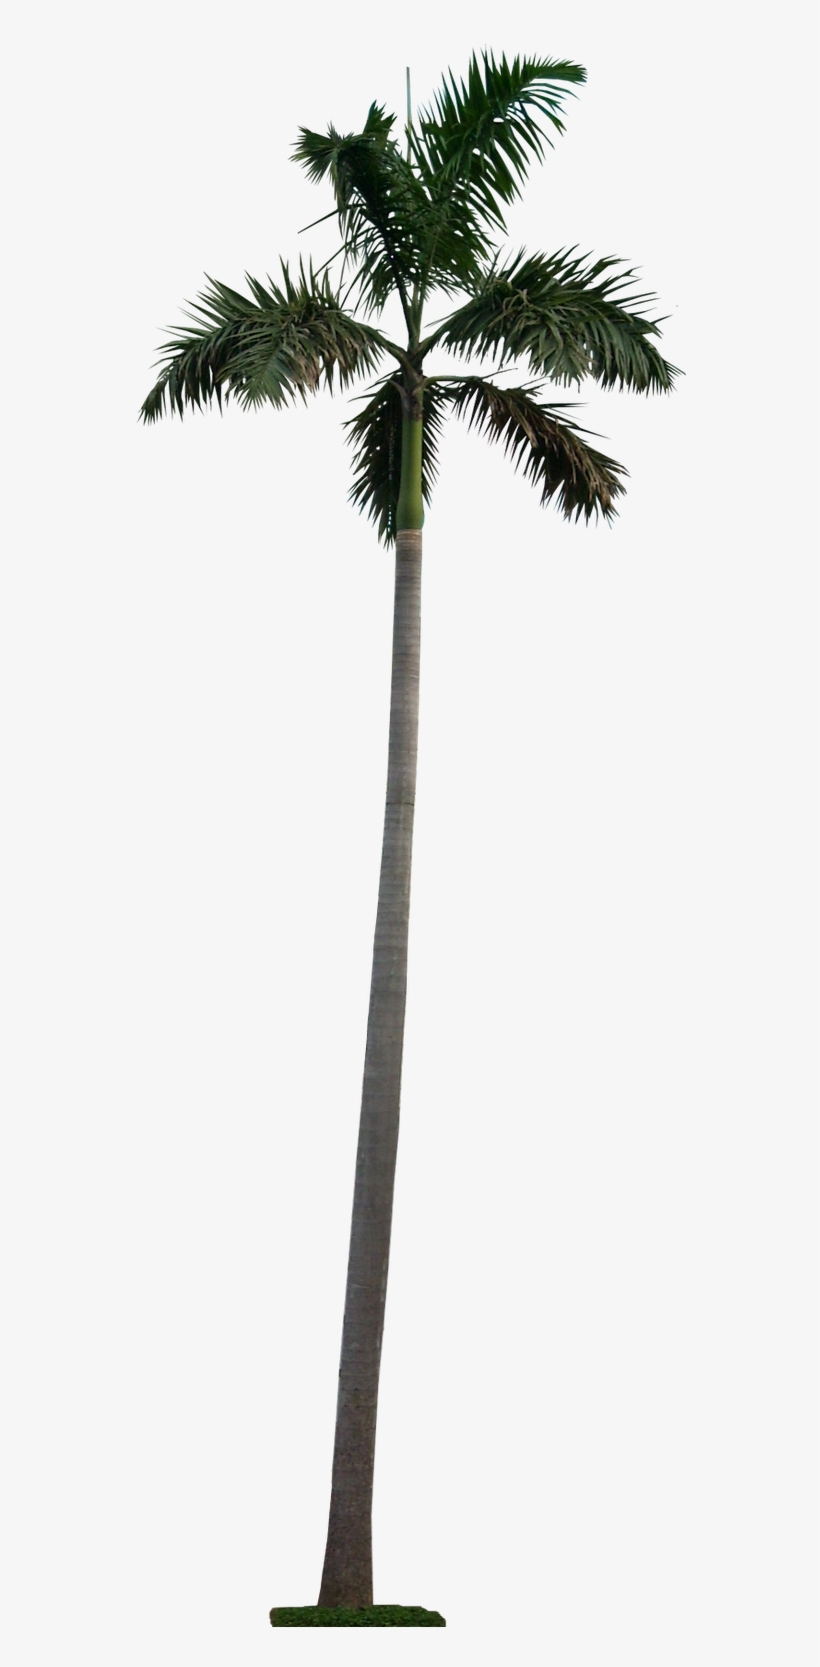 Blue Latan Palm - Palm Tree Cutout Png, transparent png #13112